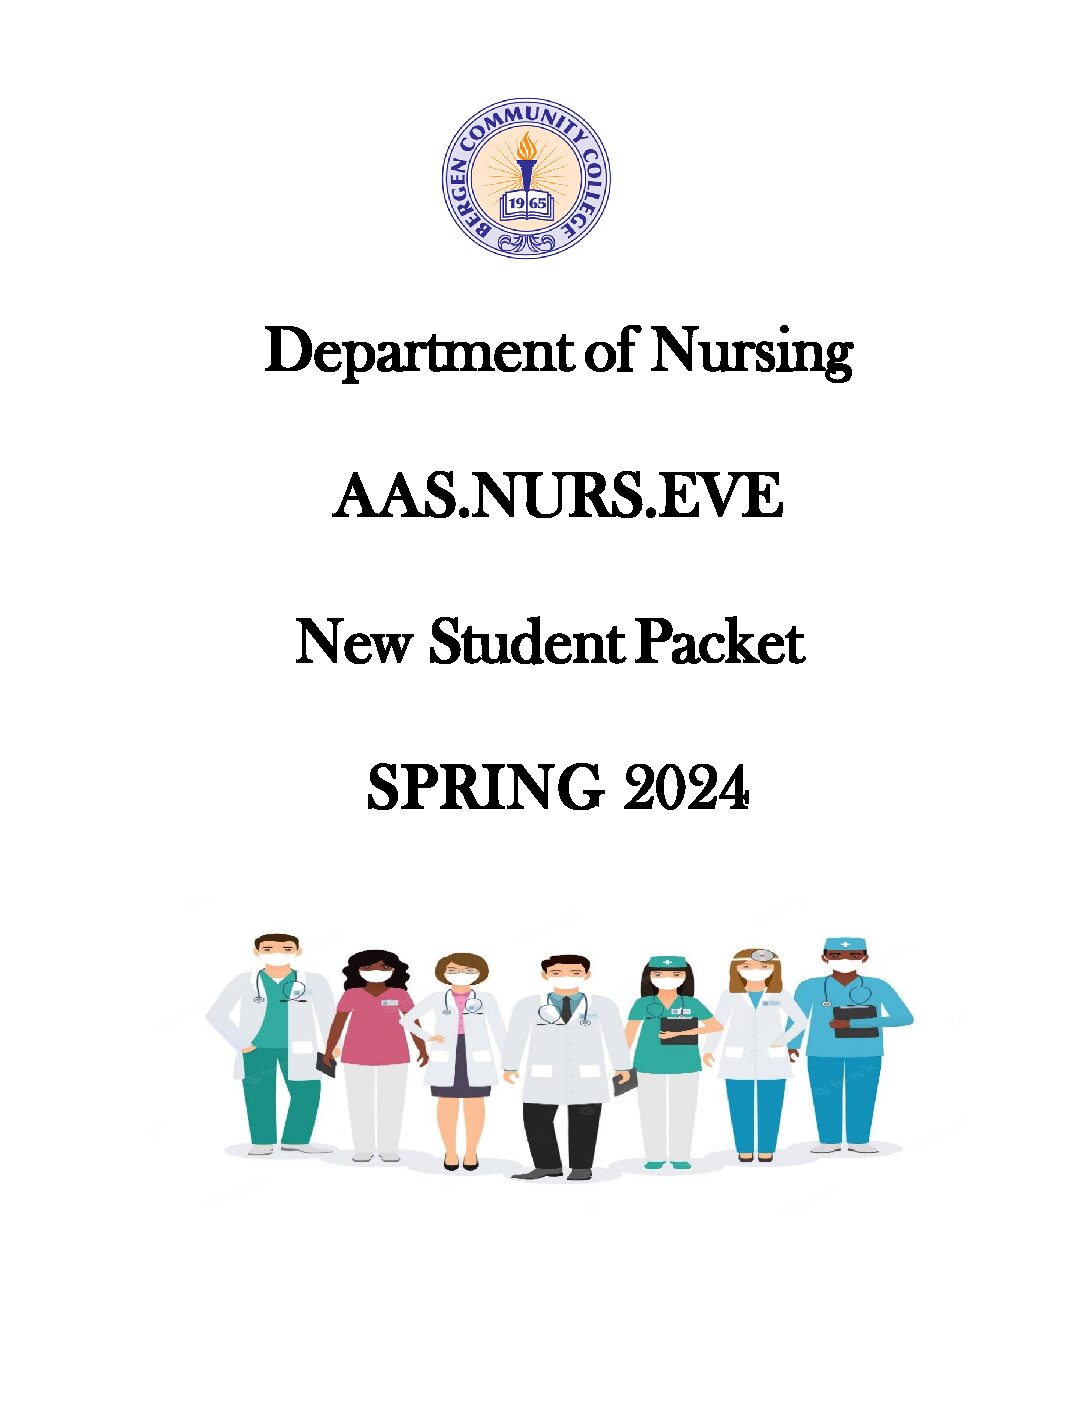 https://bergen.edu/wp-content/uploads/AAS-Nursing-Eve-Spring-2024-Student-Packet-pdf.jpg